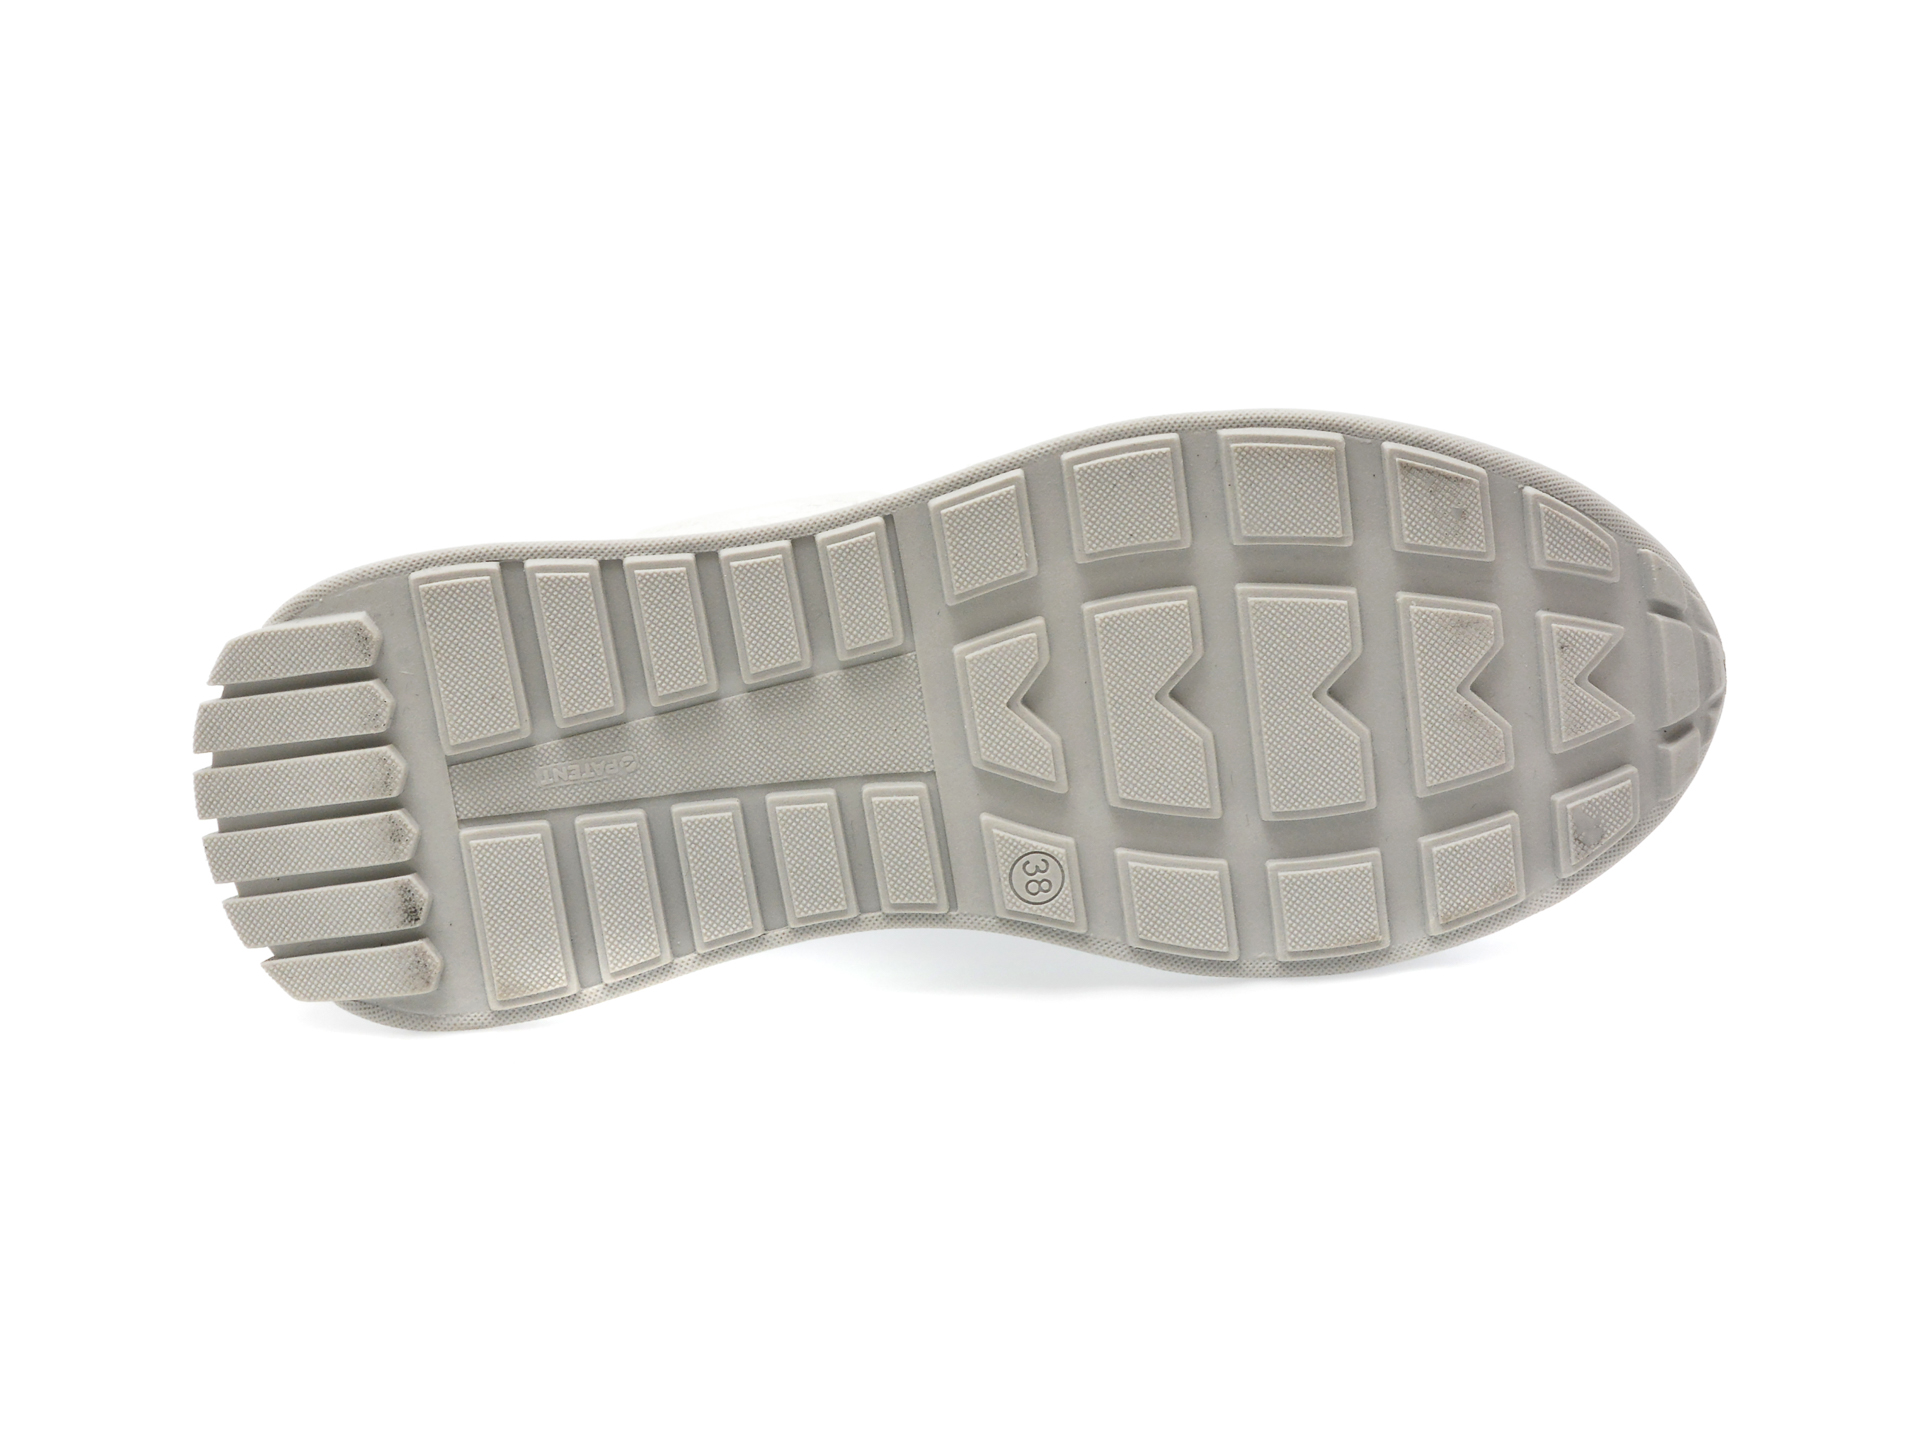 Pantofi GRYXX albi, 362025, din piele naturala